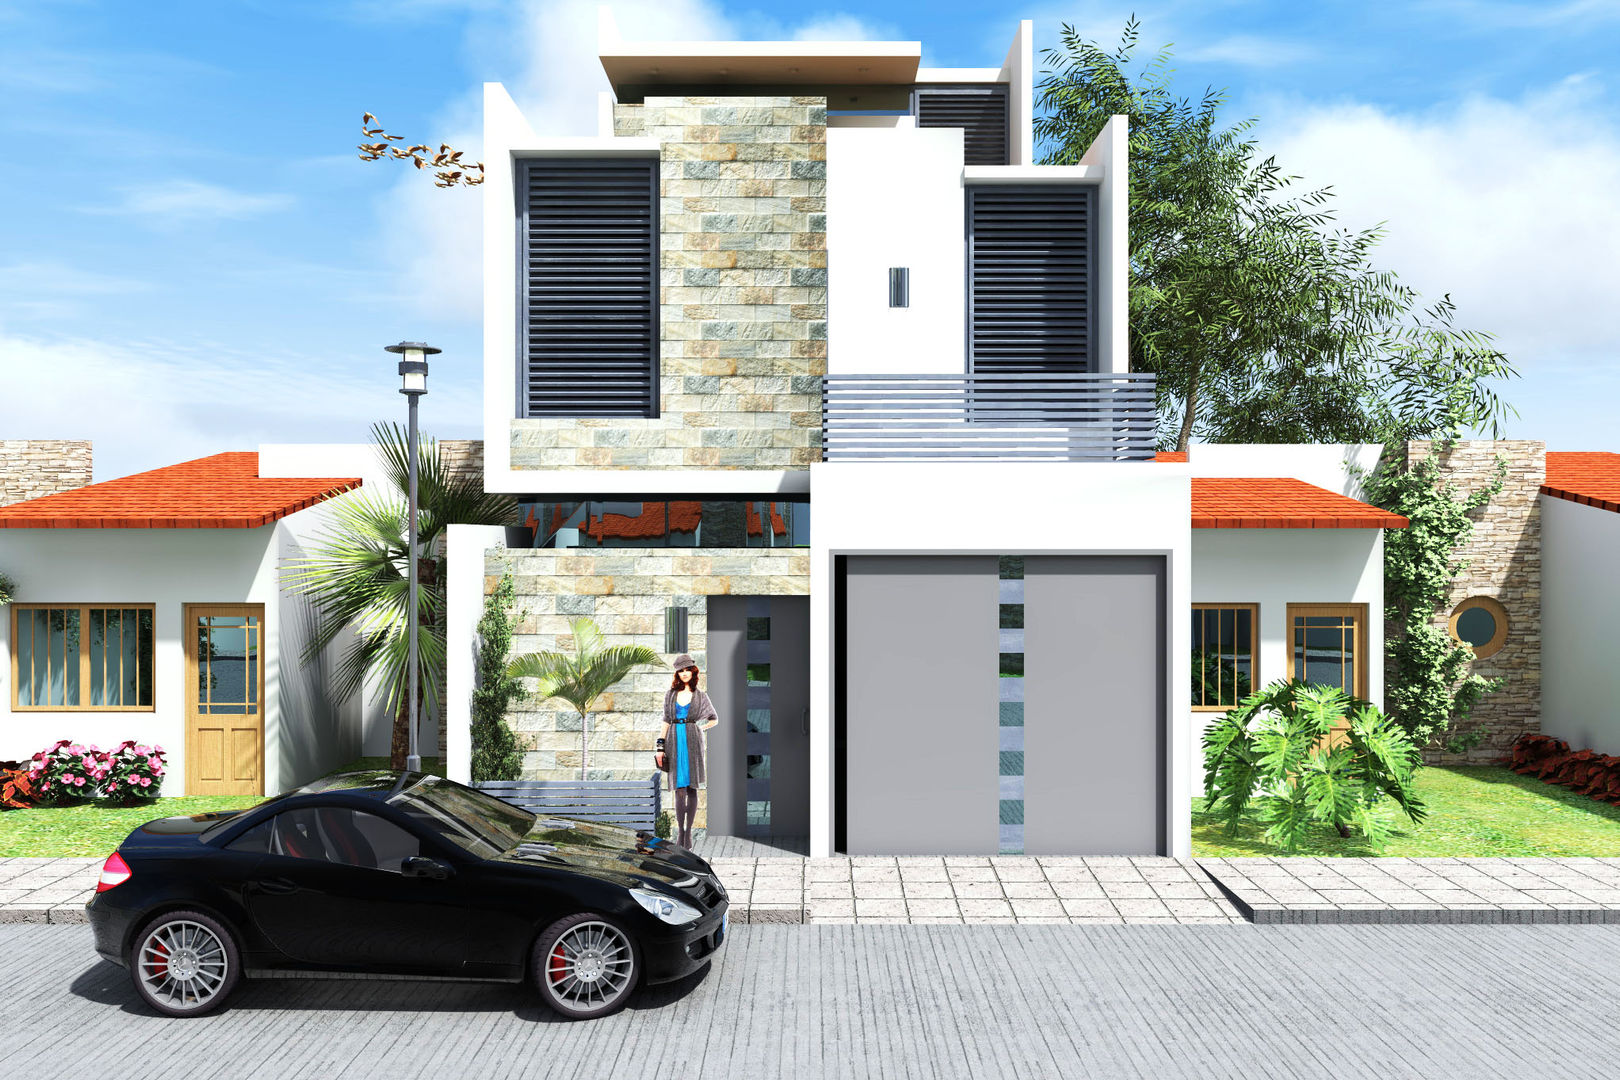 Remodelación | Casa Sibaja, Arquitectura & Diseño Arquitectura & Diseño Single family home